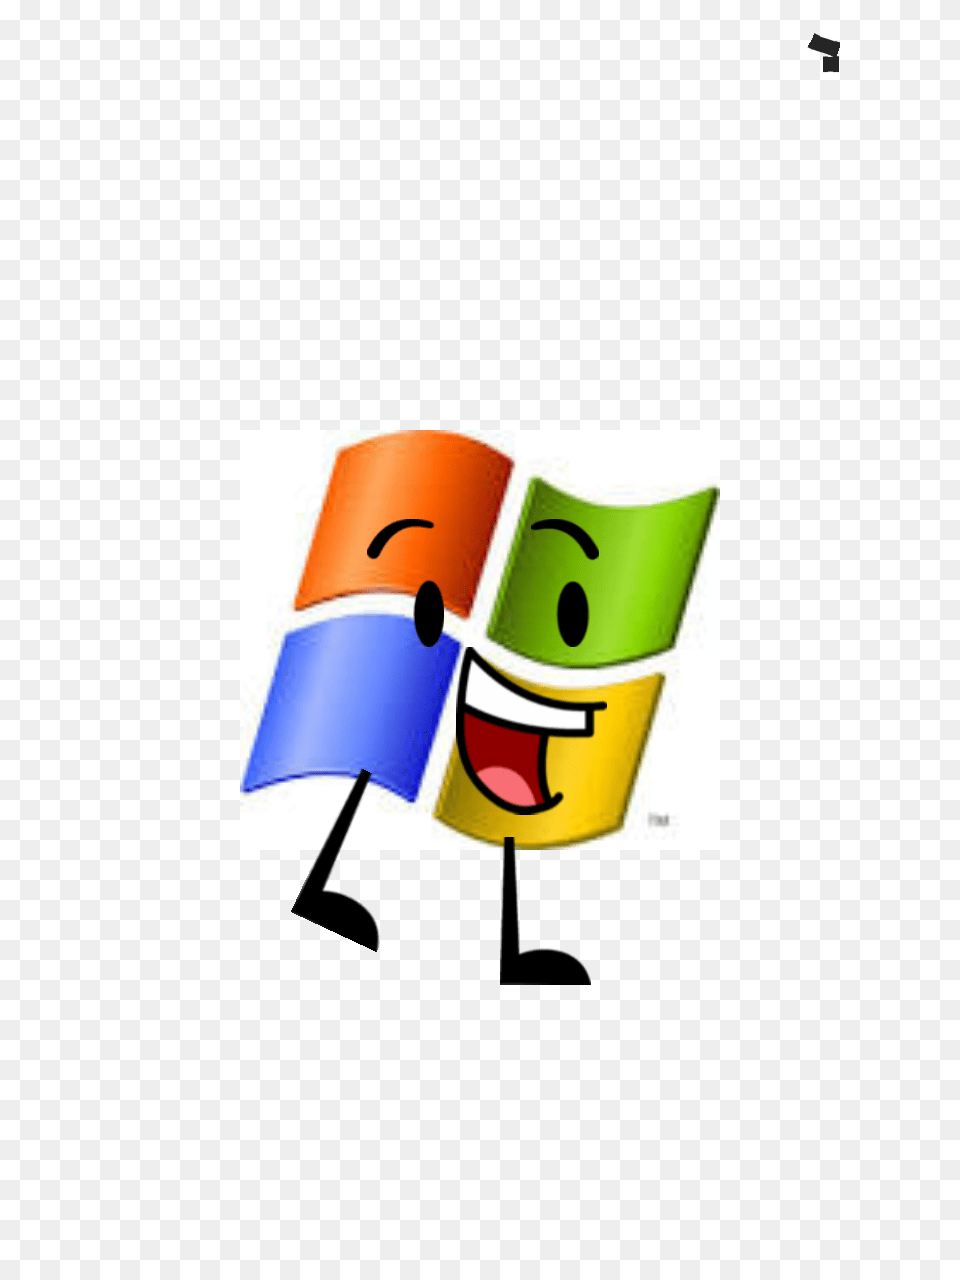 Download Windows Xp Logo 0 Windows Xp Png Image